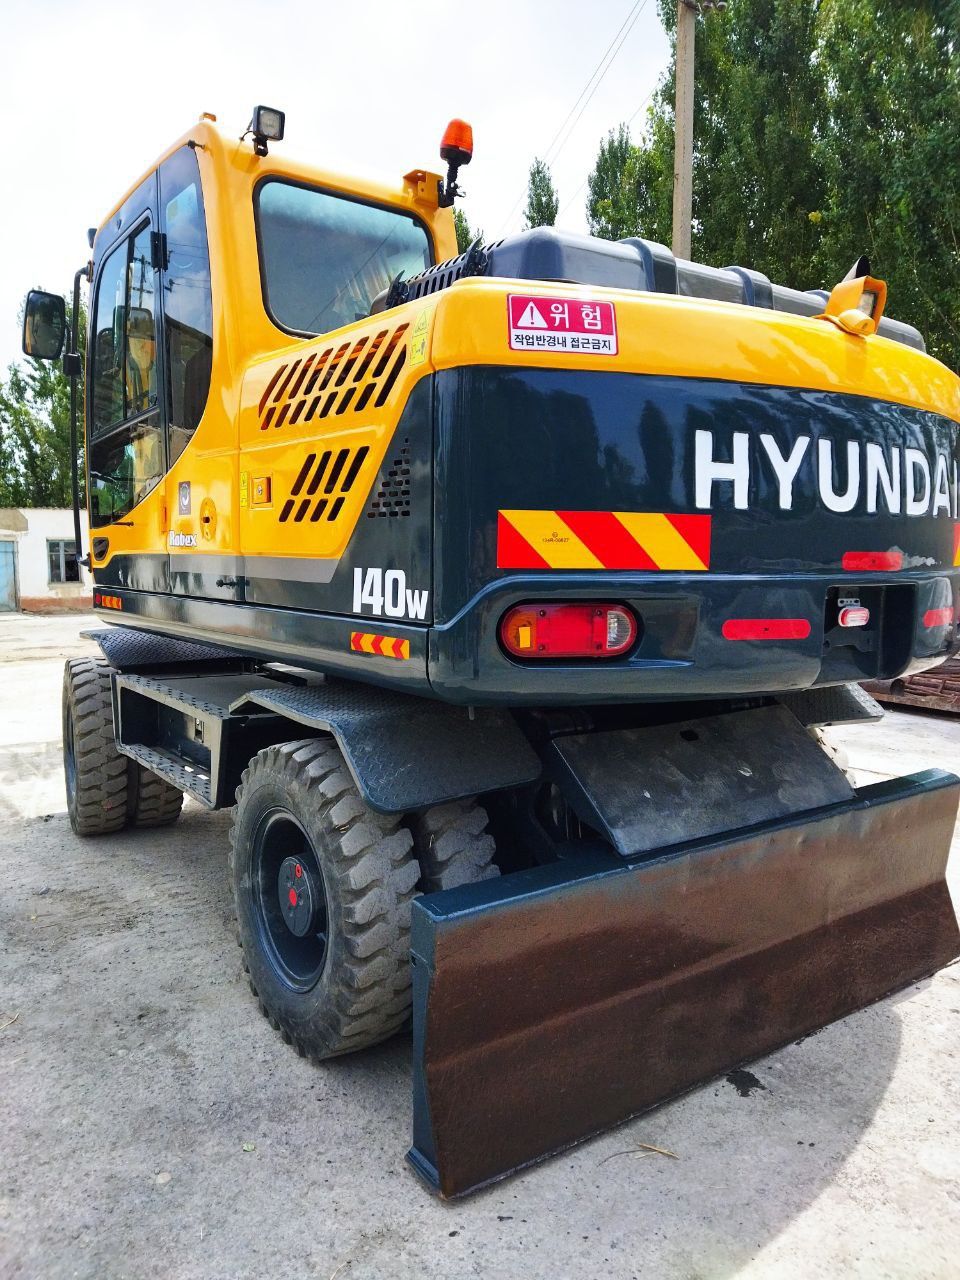 Ekiskavator Hyundai 140w